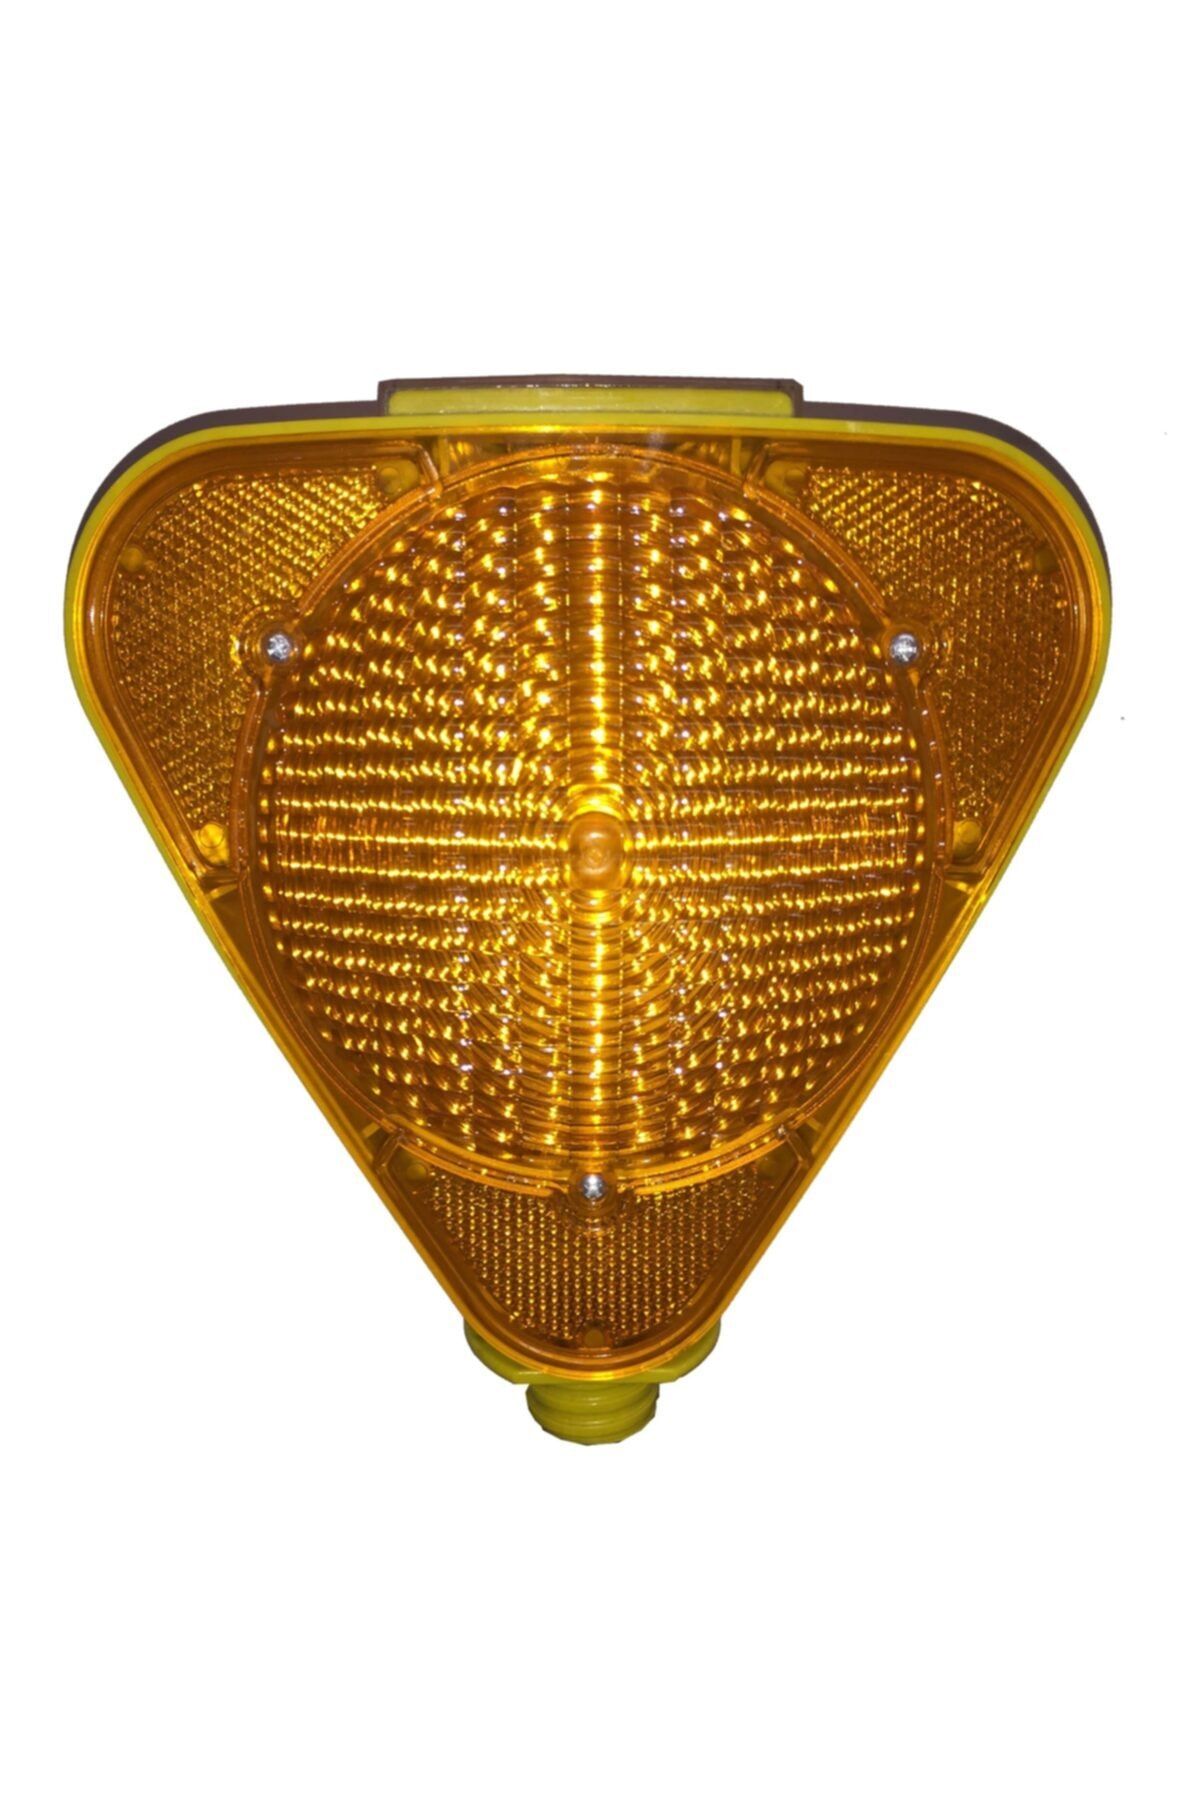 Oscar Sarı Flaşörlü Ikaz Uyarı Lambası ut8501 - Ut2101